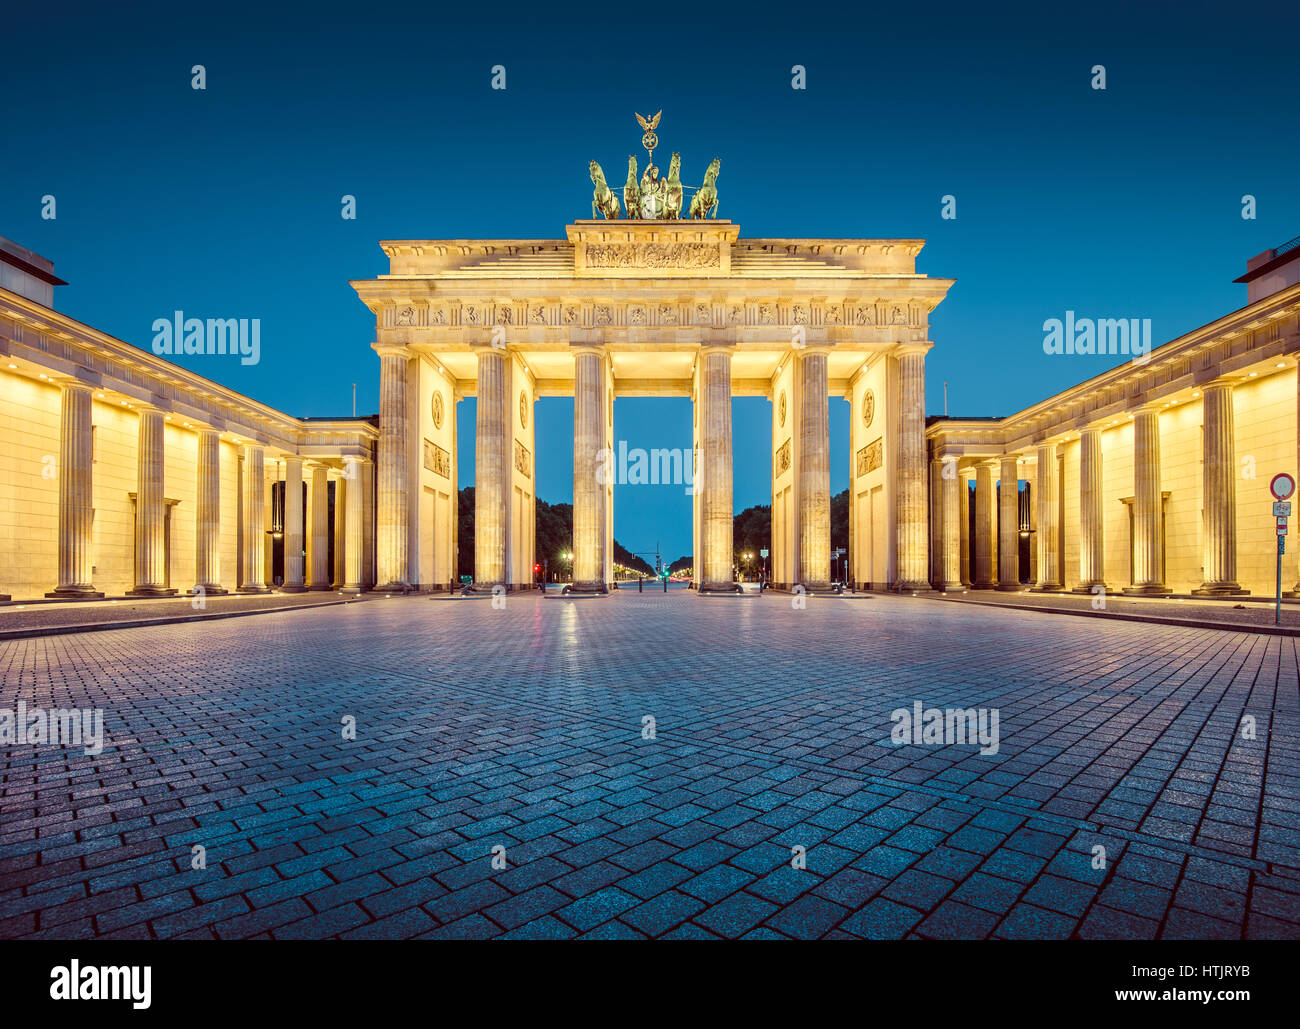 Vue panoramique du célèbre Brandenburger Tor (Porte de Brandebourg), l'un des plus célèbres monuments et symboles nationaux de l'Allemagne, au crépuscule, Berlin Banque D'Images